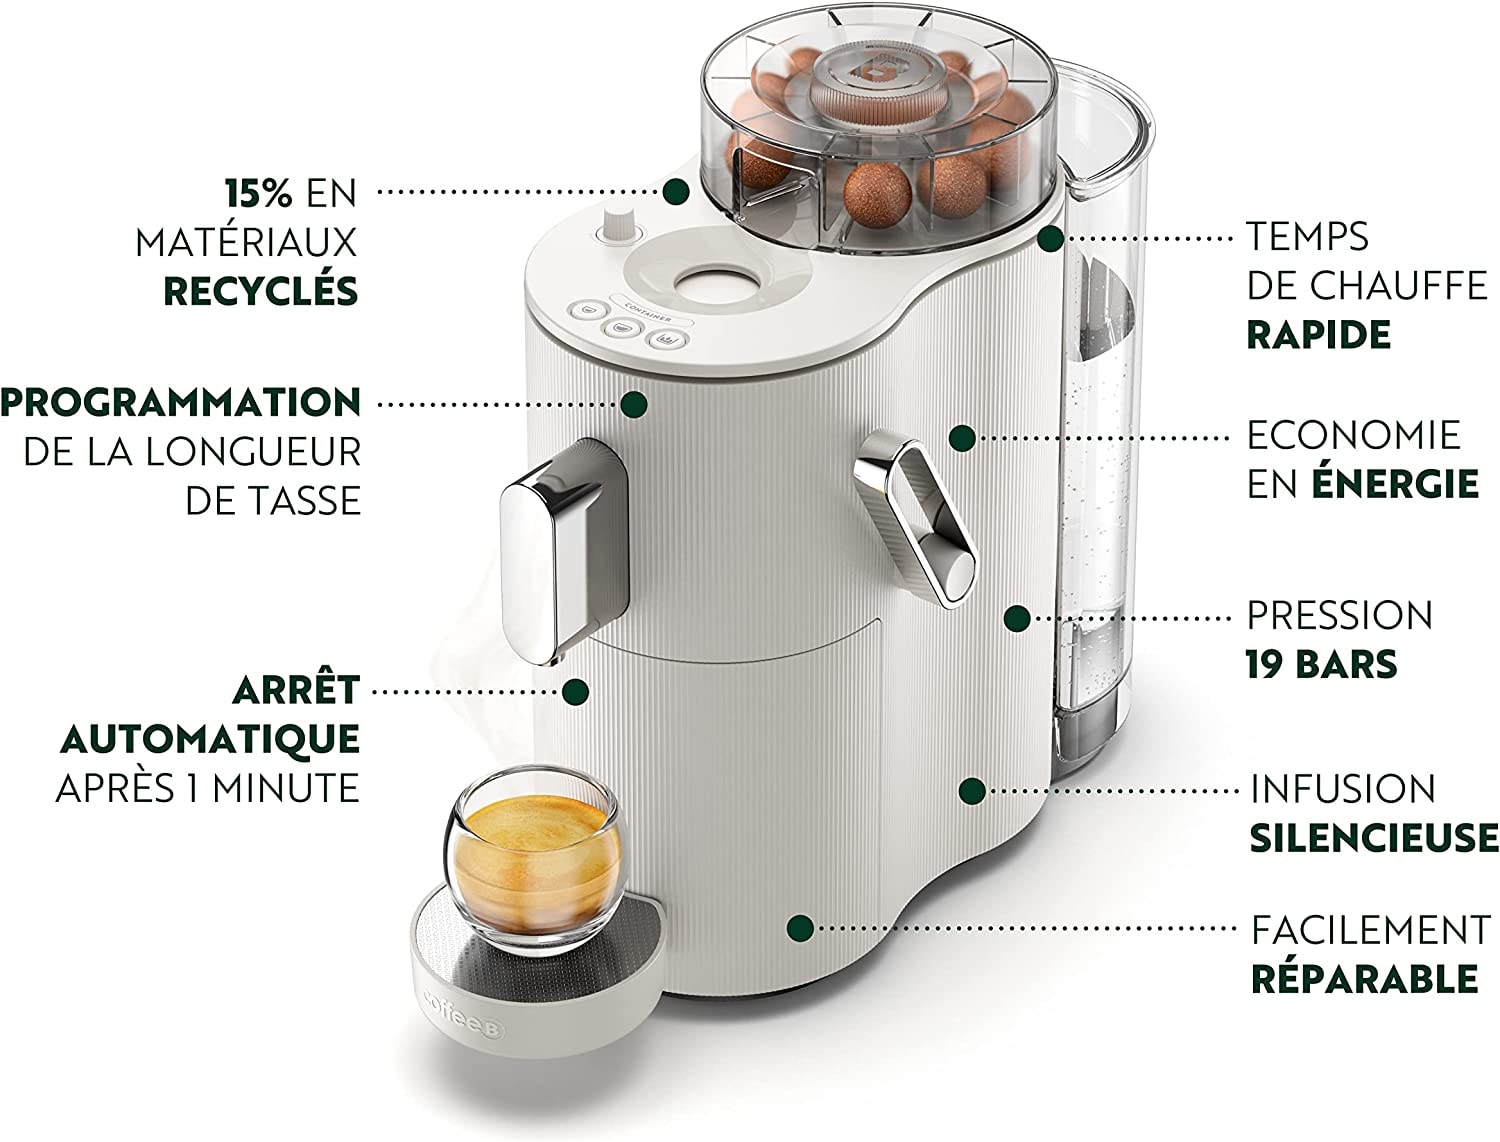 CoffeeB Globe White Machine à café à capsules – acheter chez